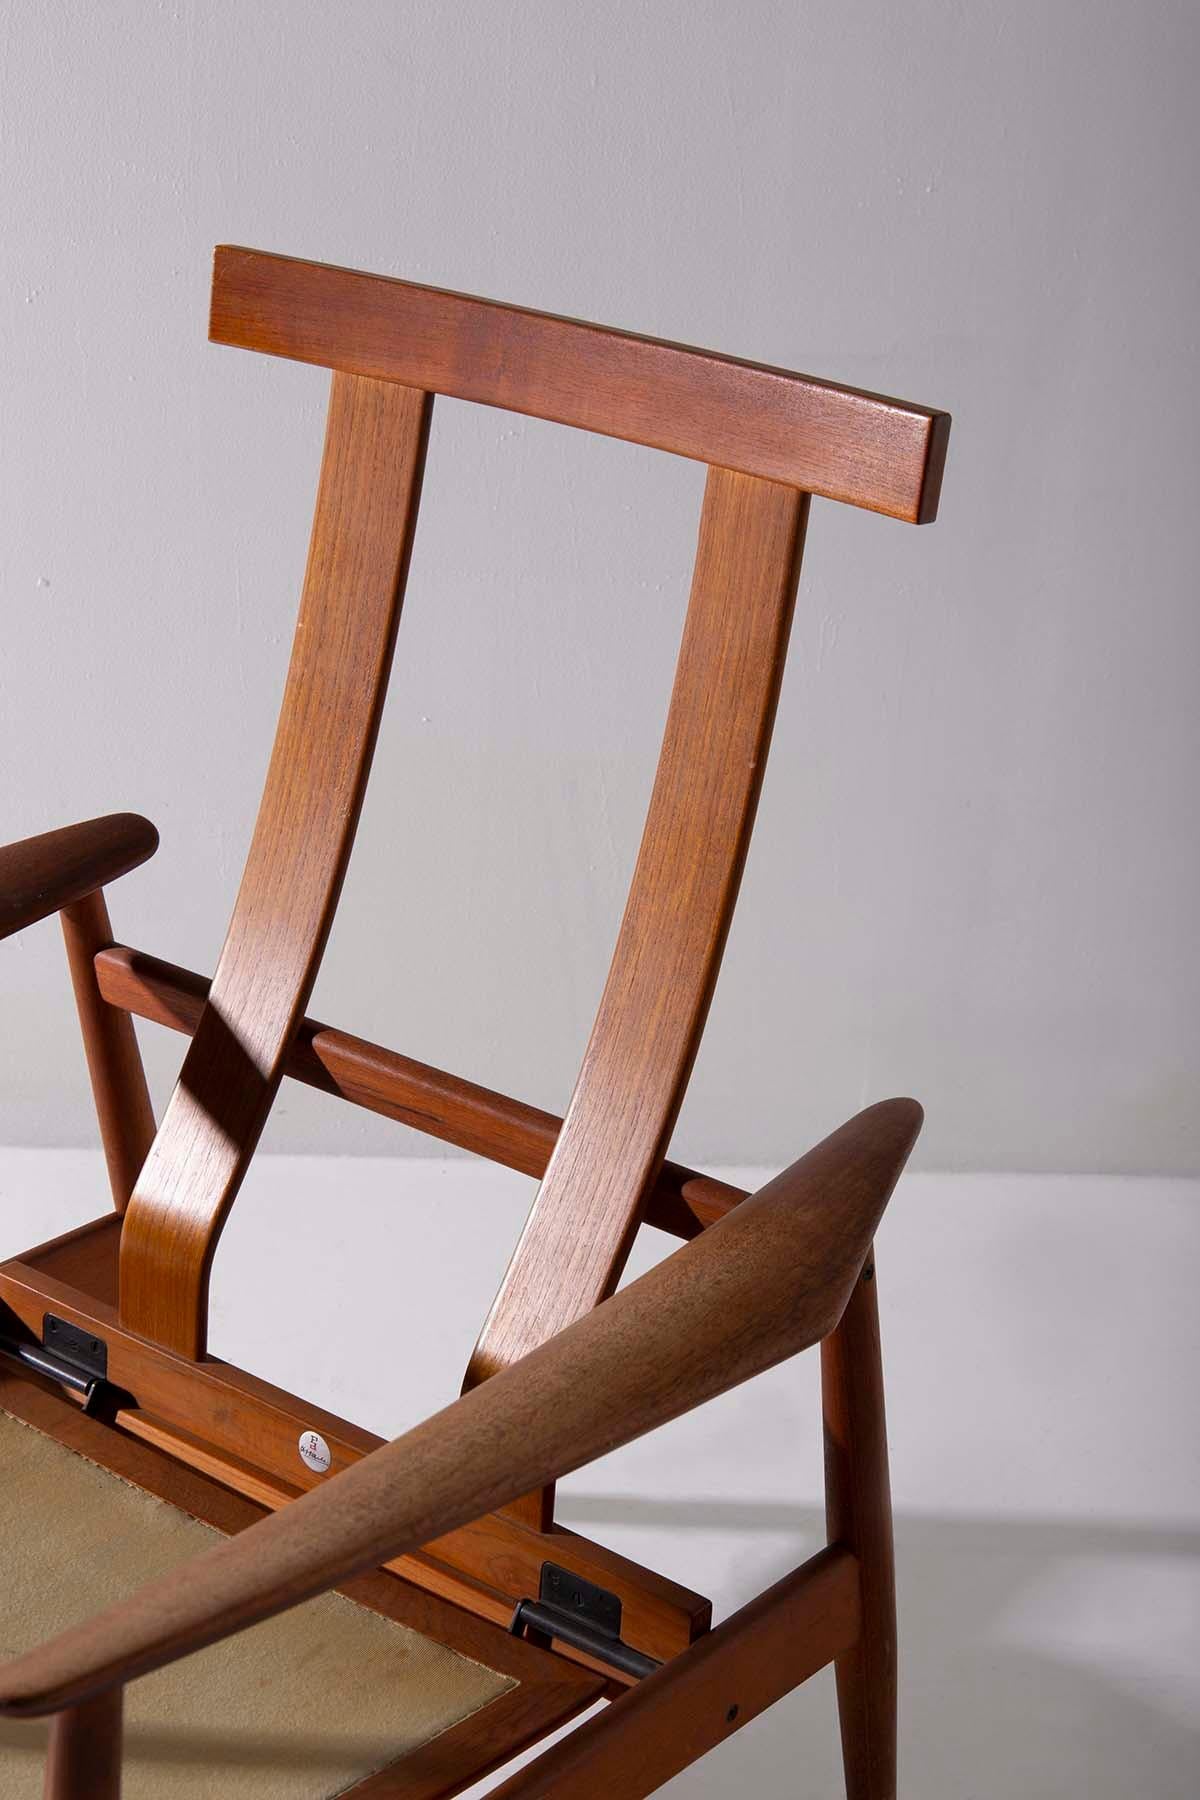 Un fauteuil de relaxation vintage du célèbre Arne Vodder, fabriqué pour France & Daverkosen dans les années 1950, témoigne d'un design intemporel. Son authenticité est soulignée par la présence de l'étiquette originale, portant le modèle FD 164,